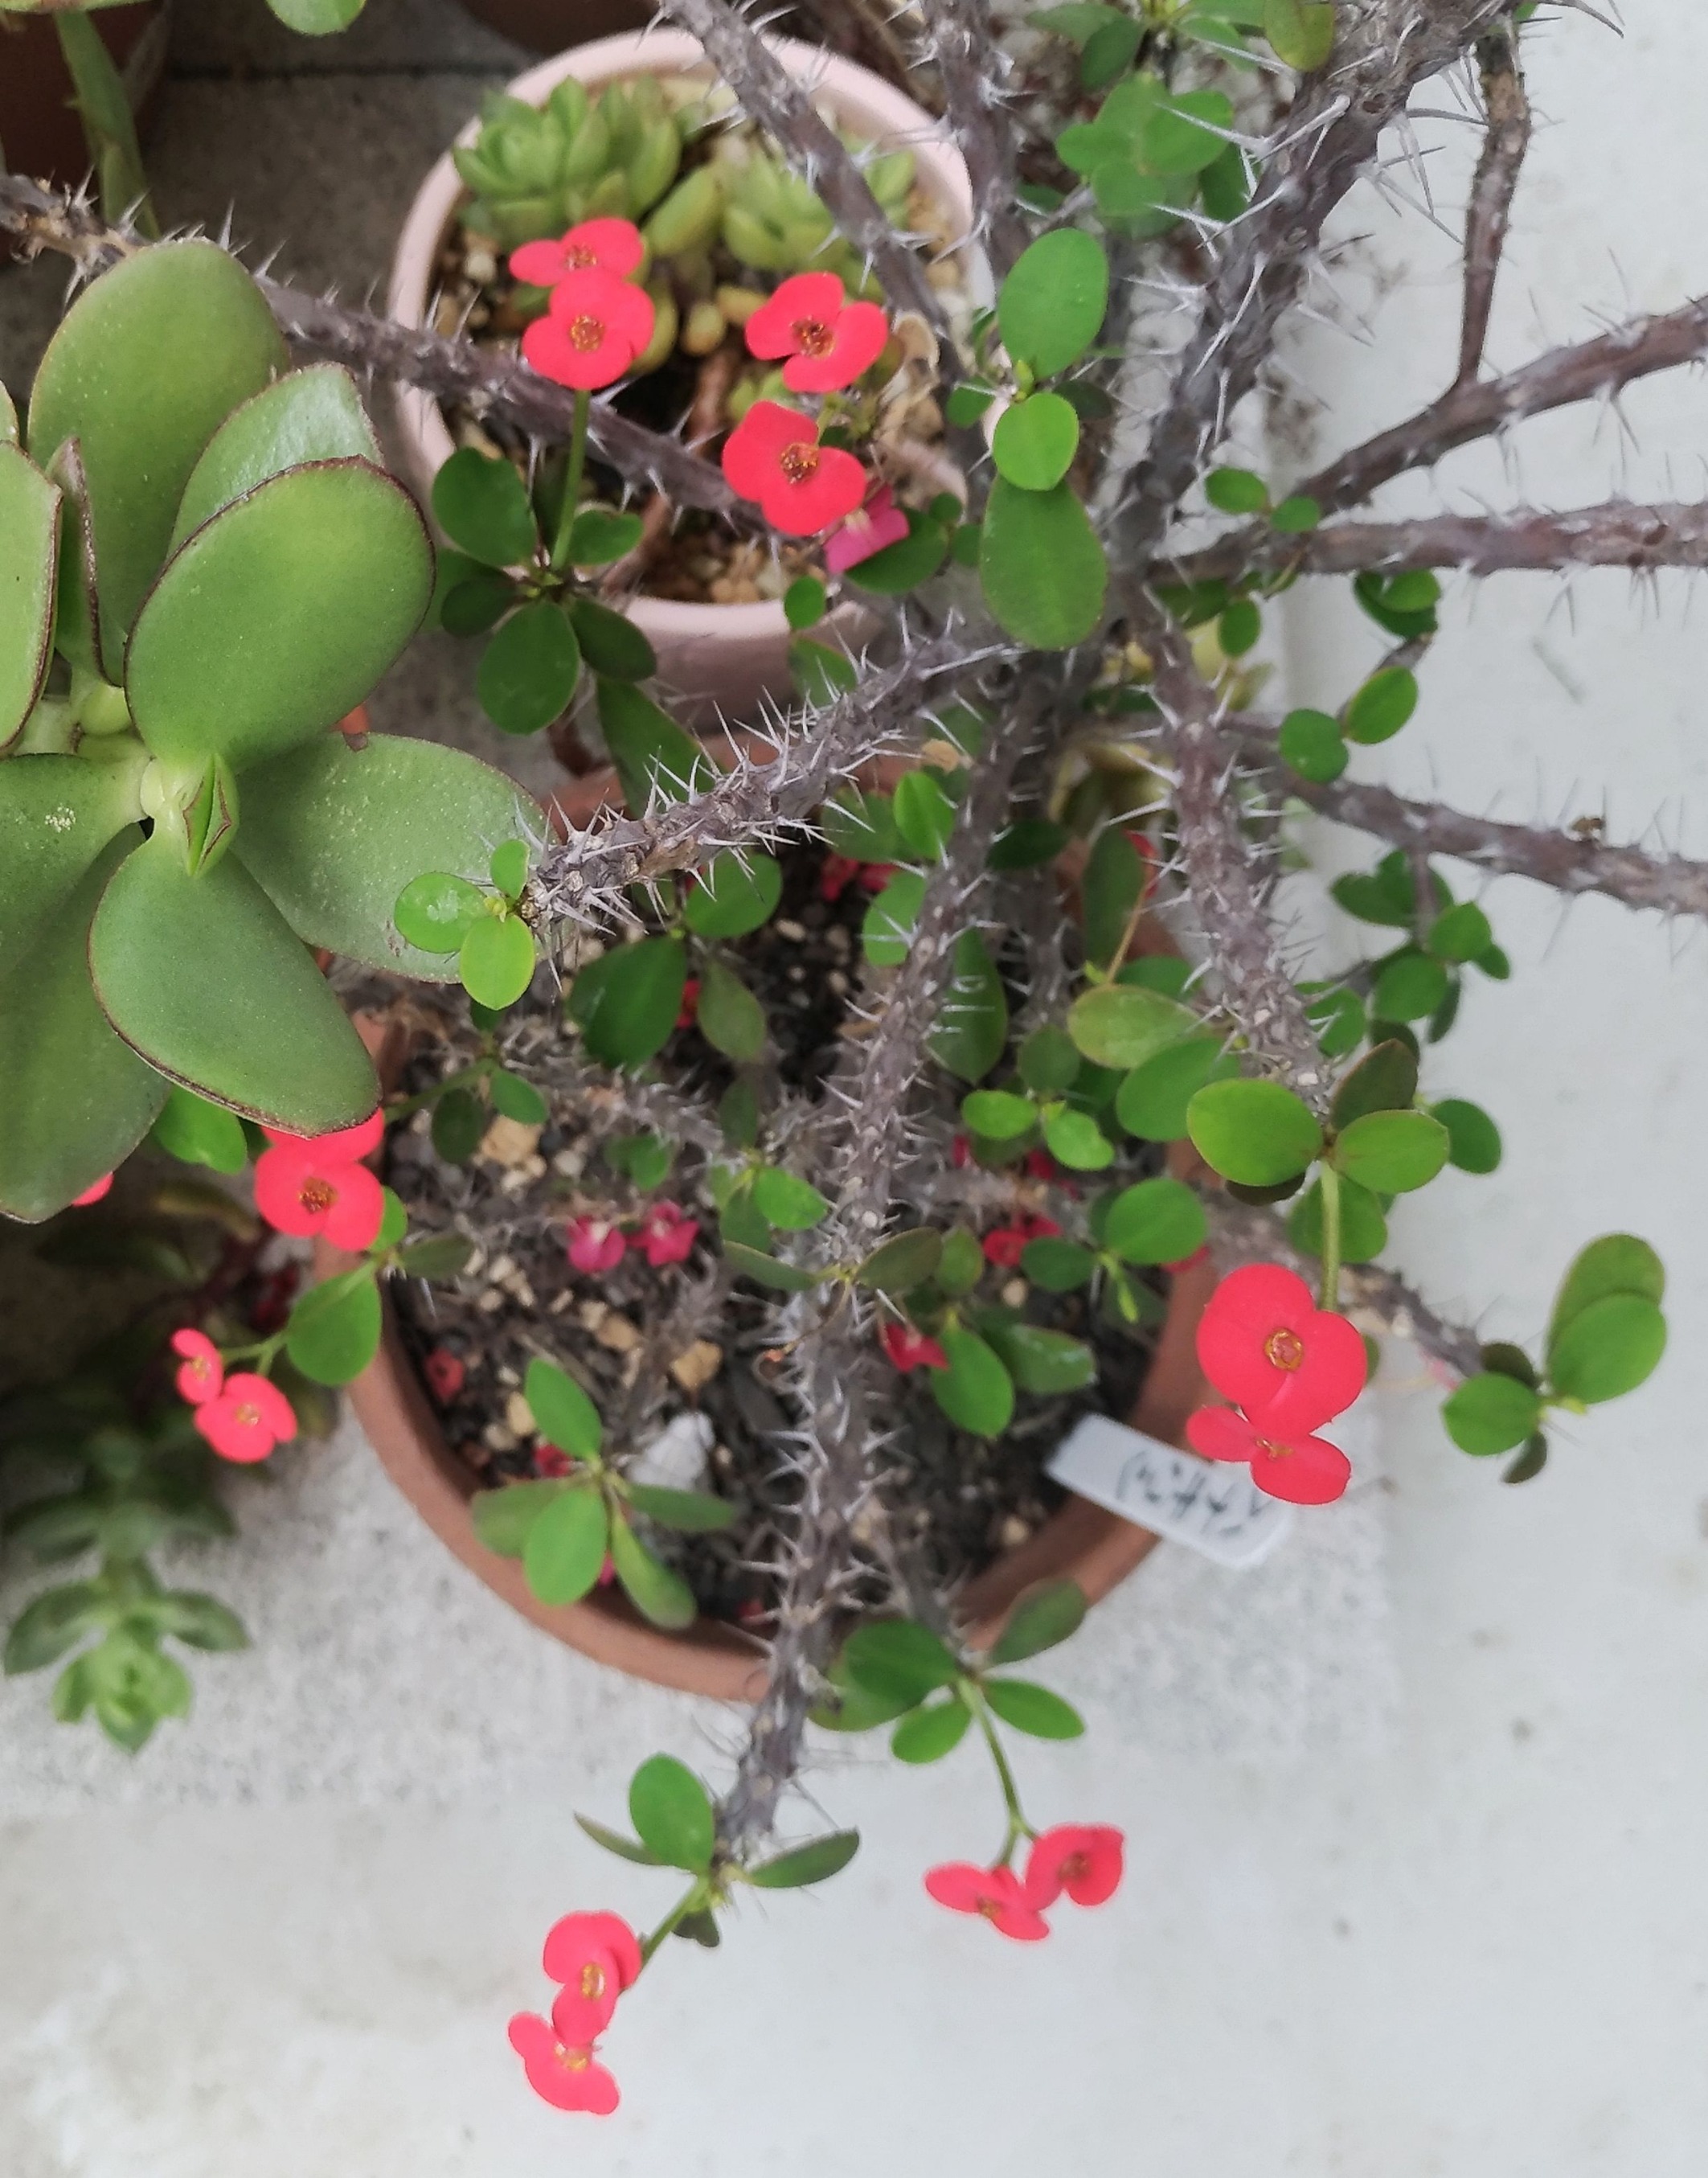 تويتر こころんグリーン على تويتر ハナキリンの赤い花がたくさん開いています 赤い花びらのように見える所は苞で 花はその中心部分です マダガスカル原産の多肉植物です ハナキリン 赤い花 苞 マダガスカル原産 多肉植物 園芸品種 園芸 ガーデニング